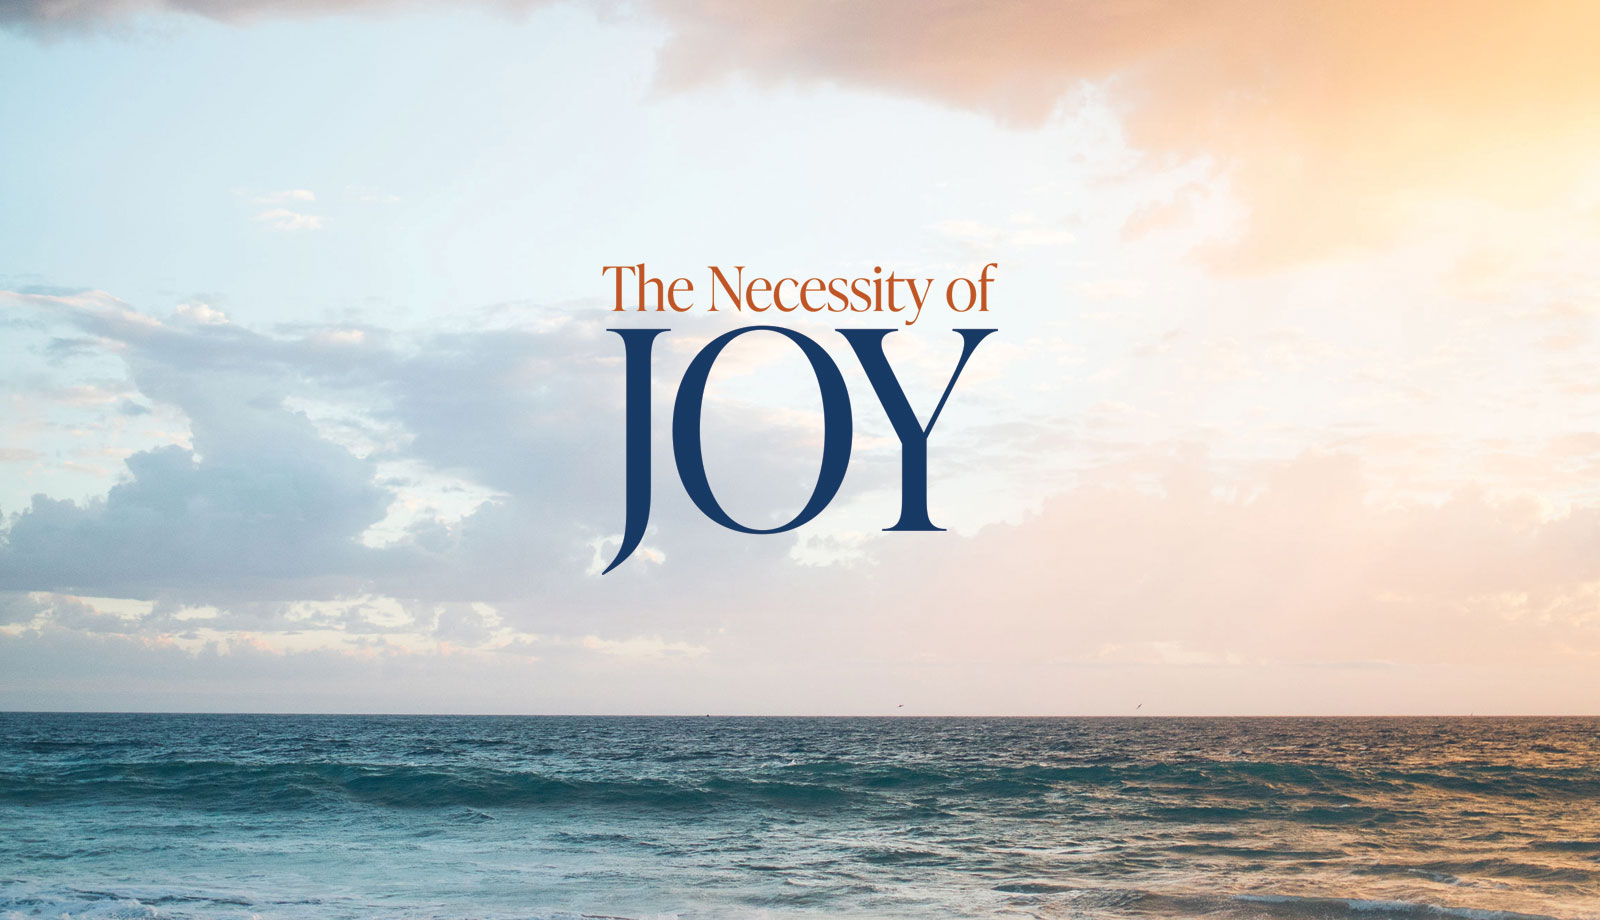 The Necessity of Joy theme graphic